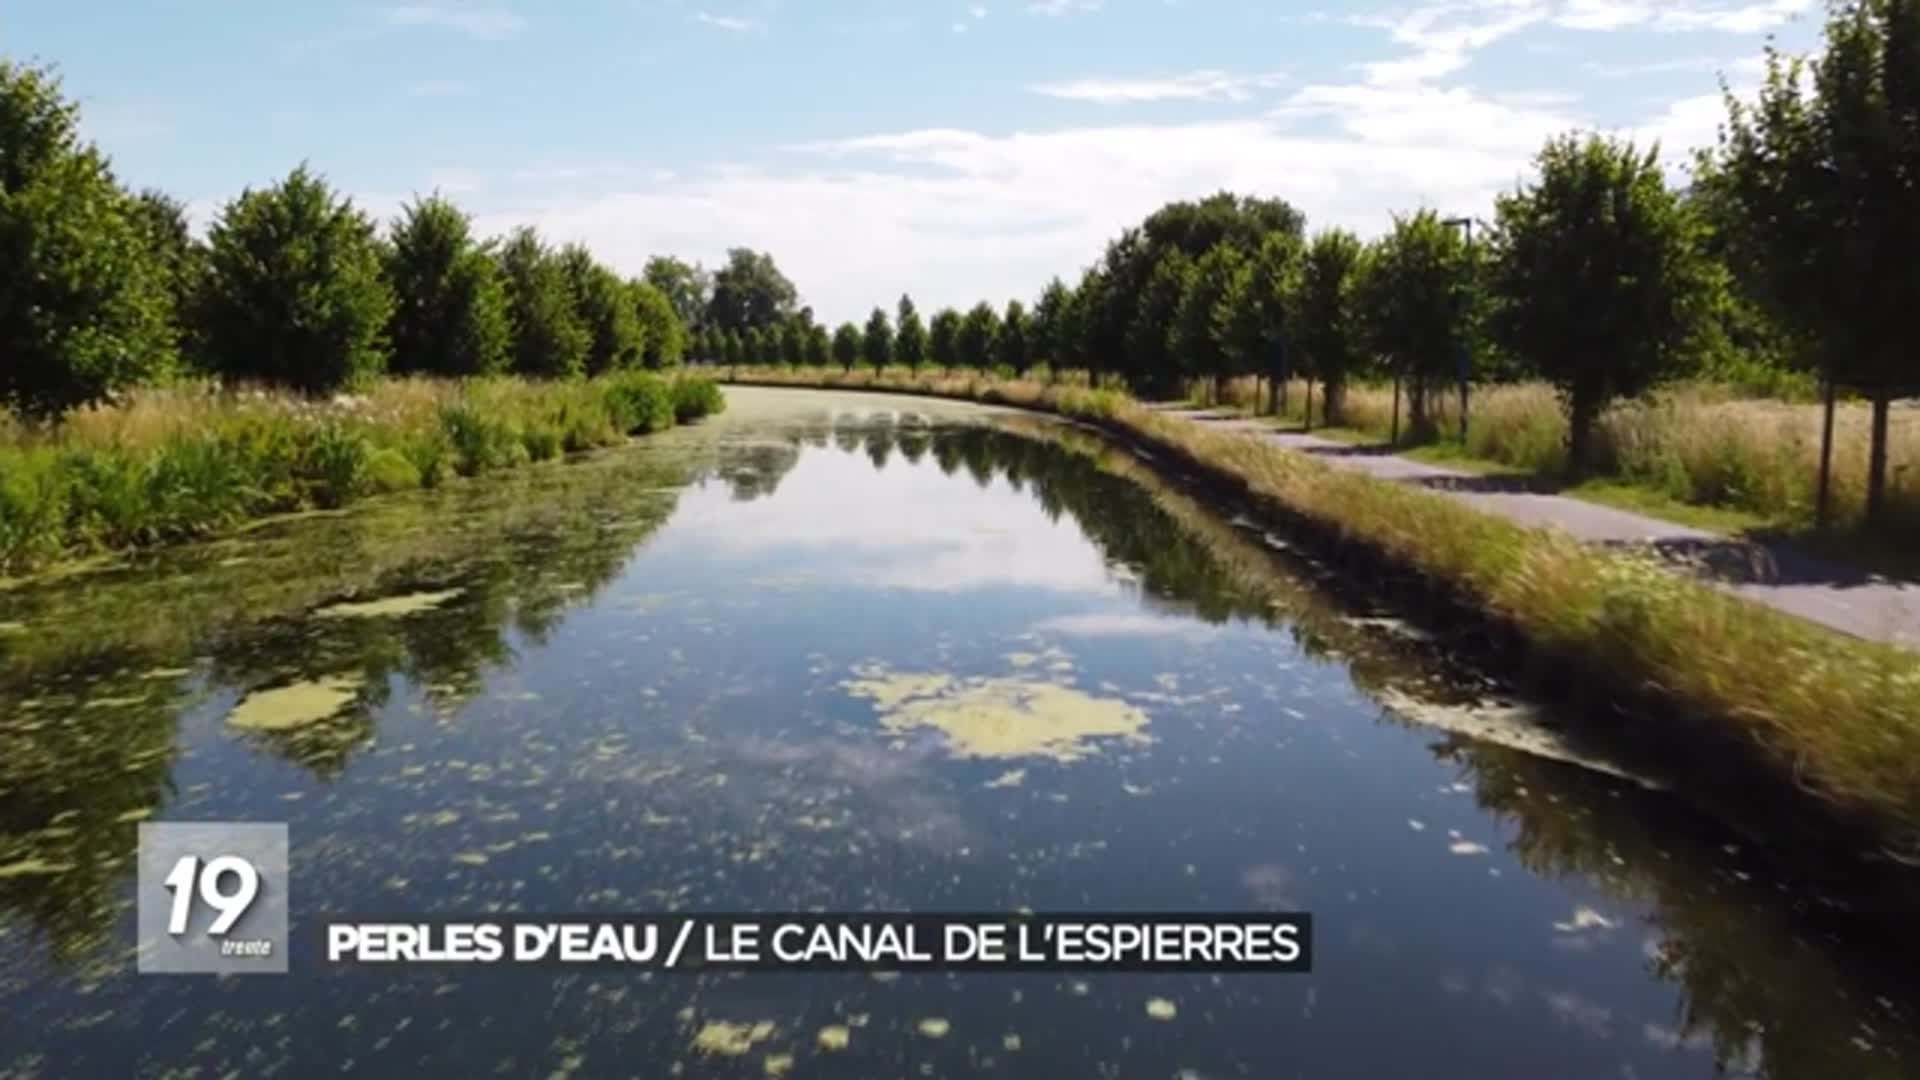 Perles d eau / Le canal de l Espierres